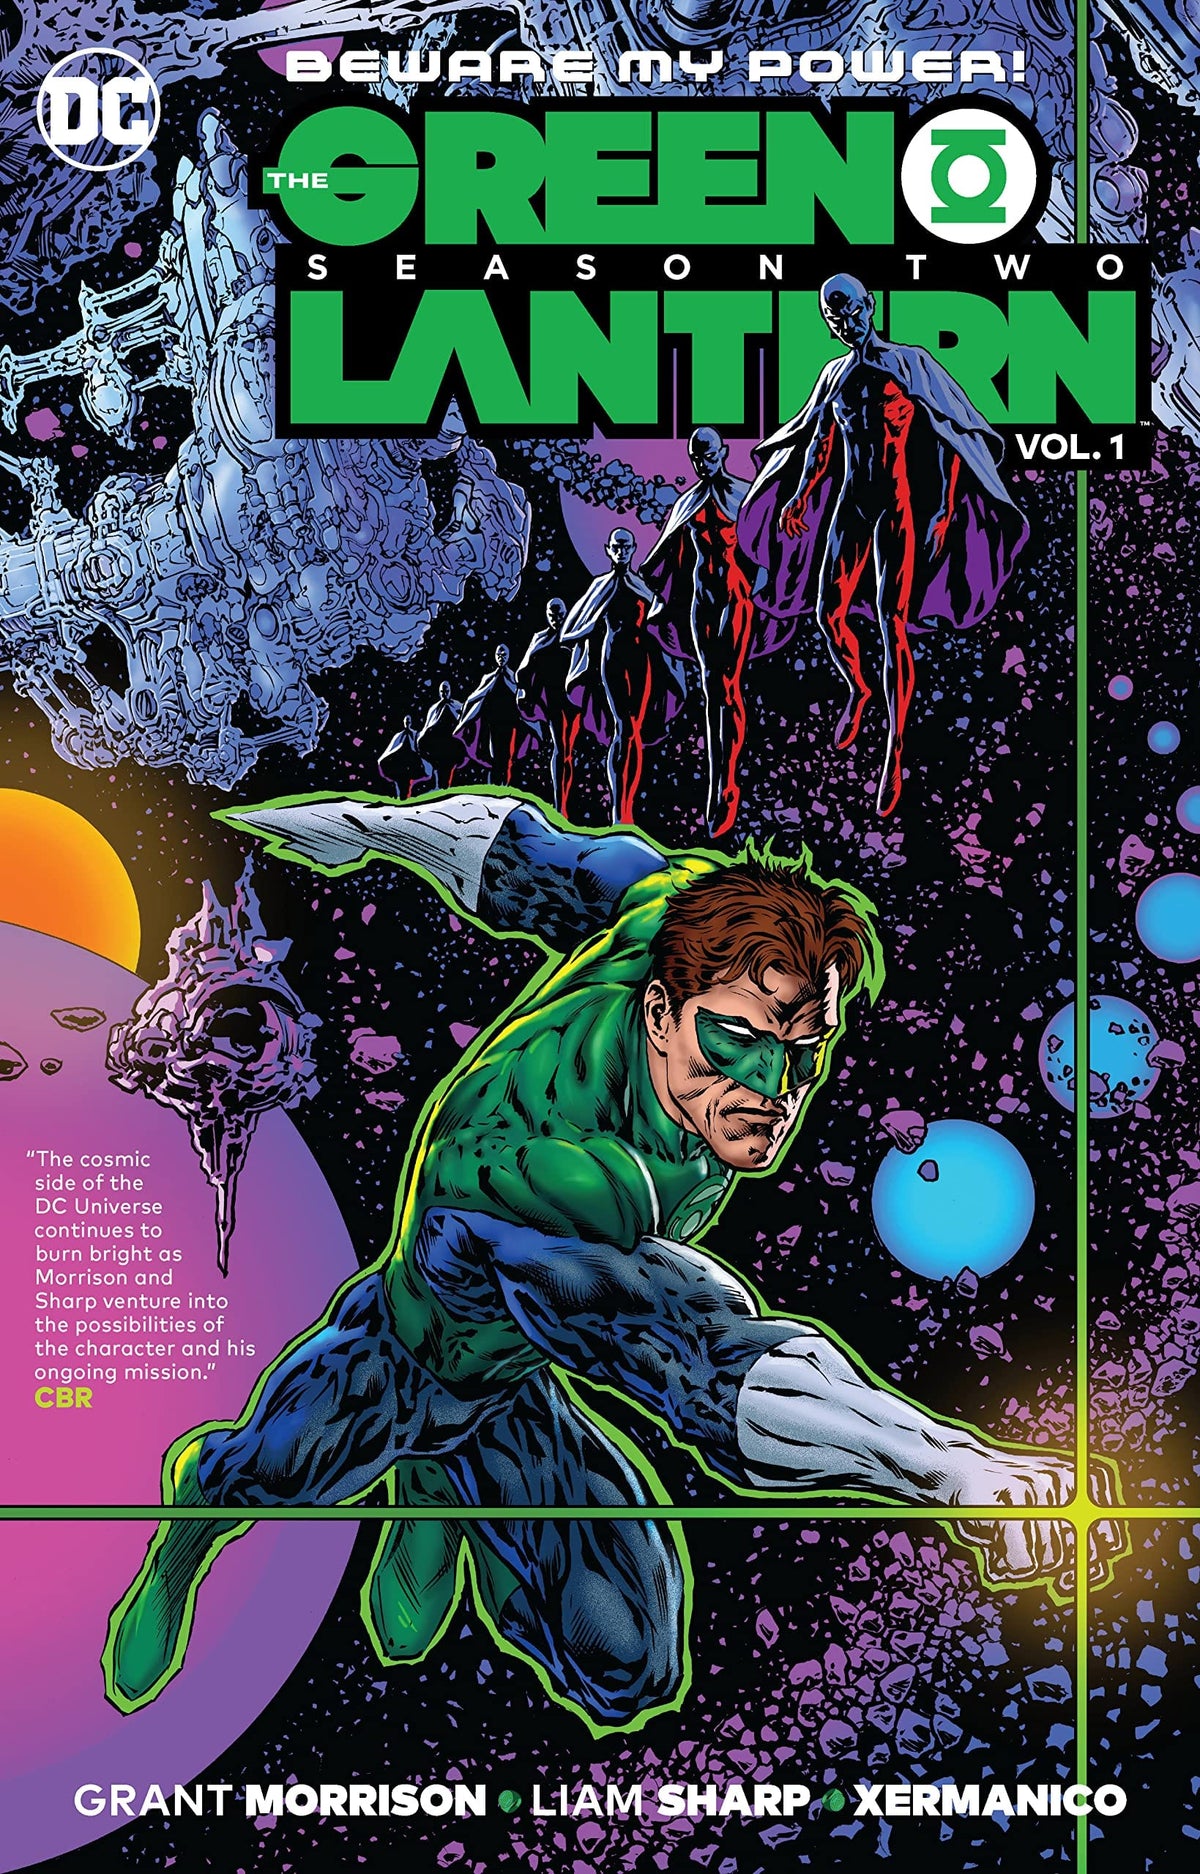 Green Lantern Season Two Vol. 1 TP - Third Eye